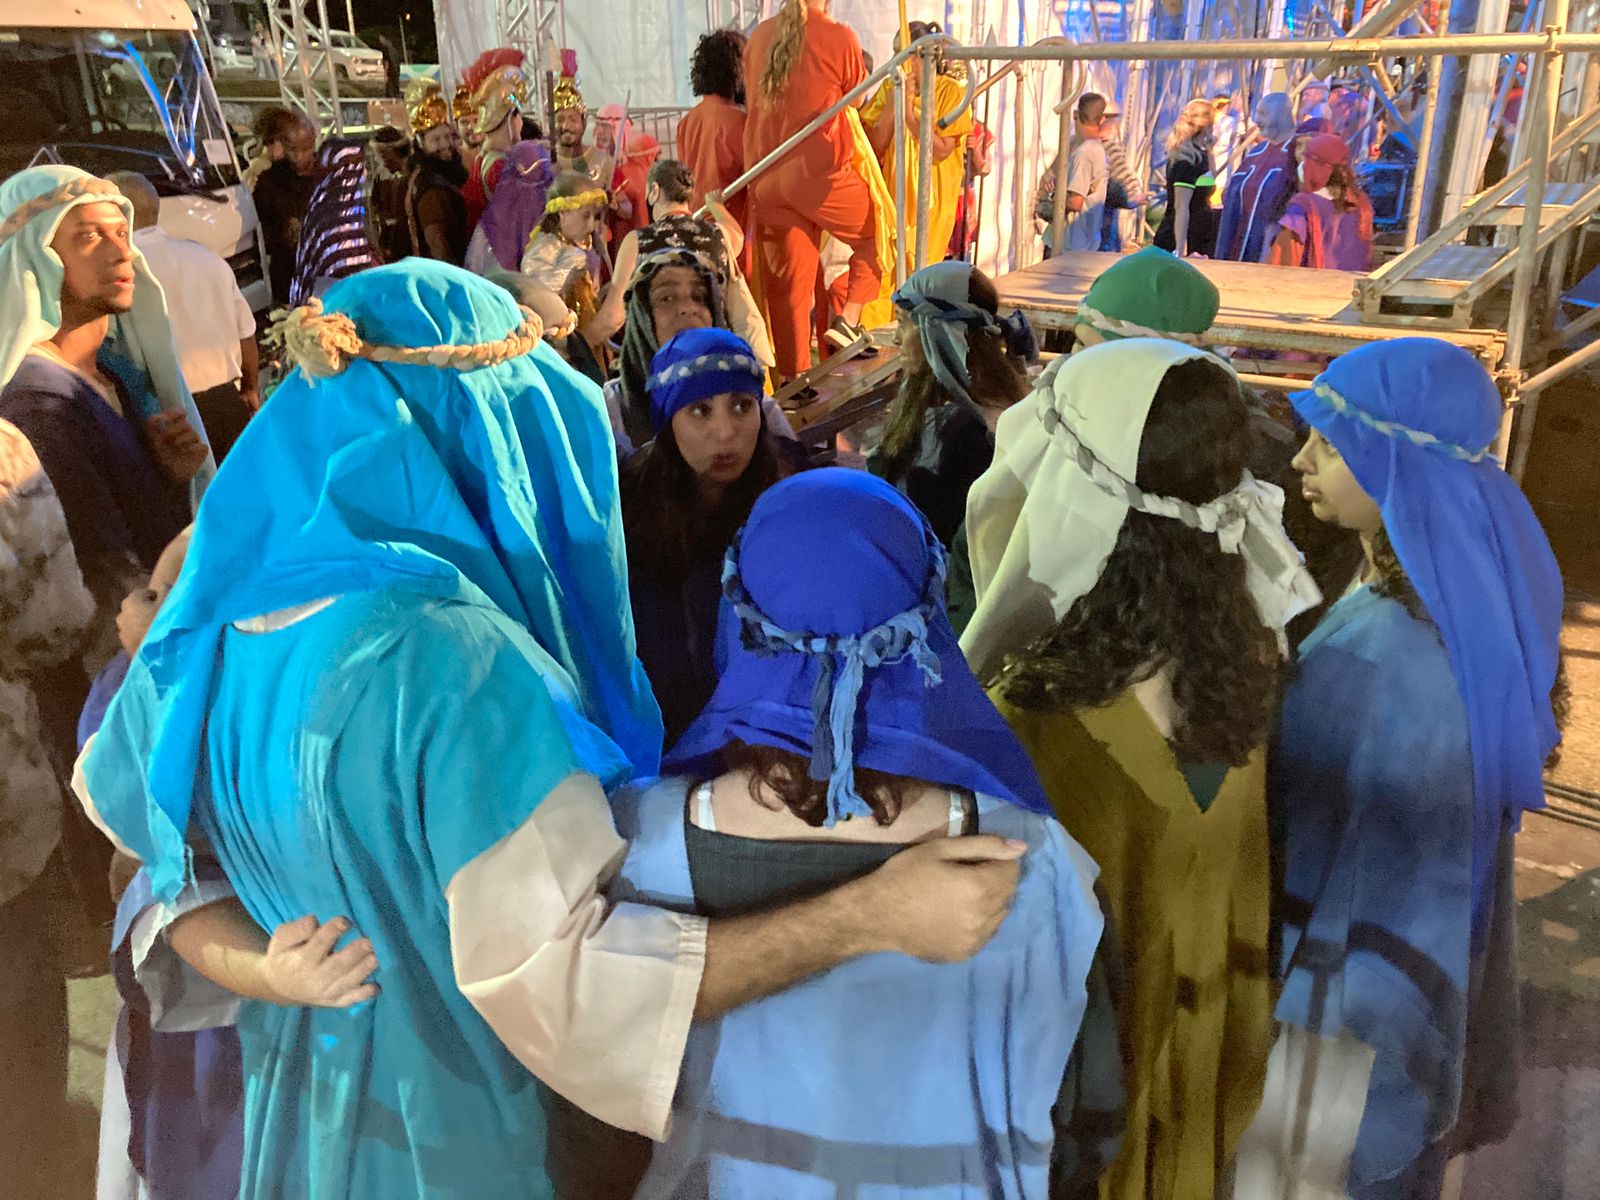 Espetáculo 'Paixão de Cristo' chega a Nova Iguaçu